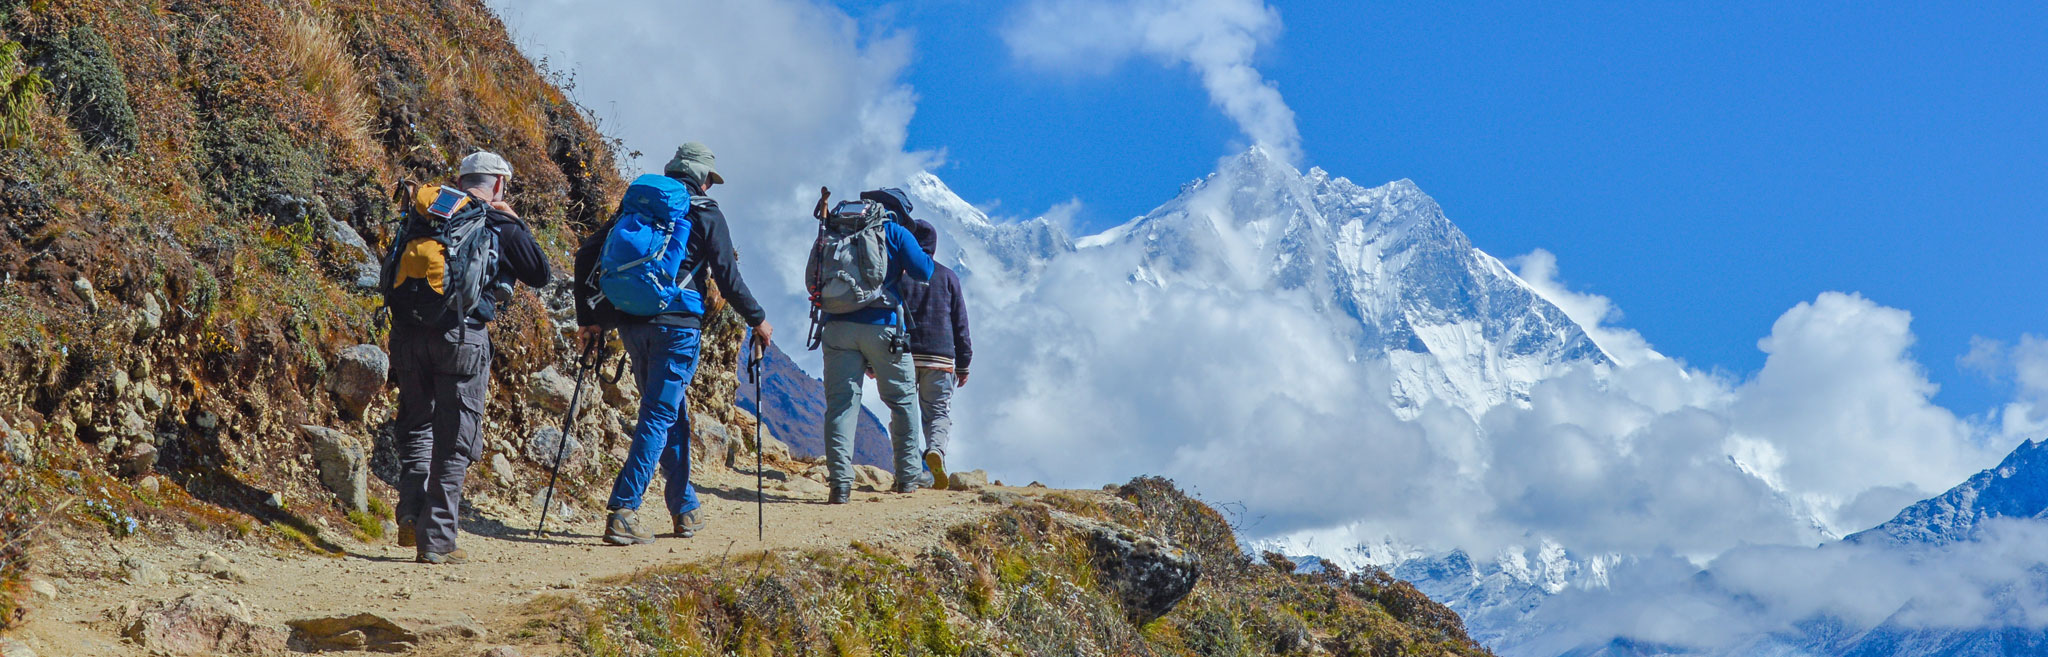 Mt. Kailash via Simikot